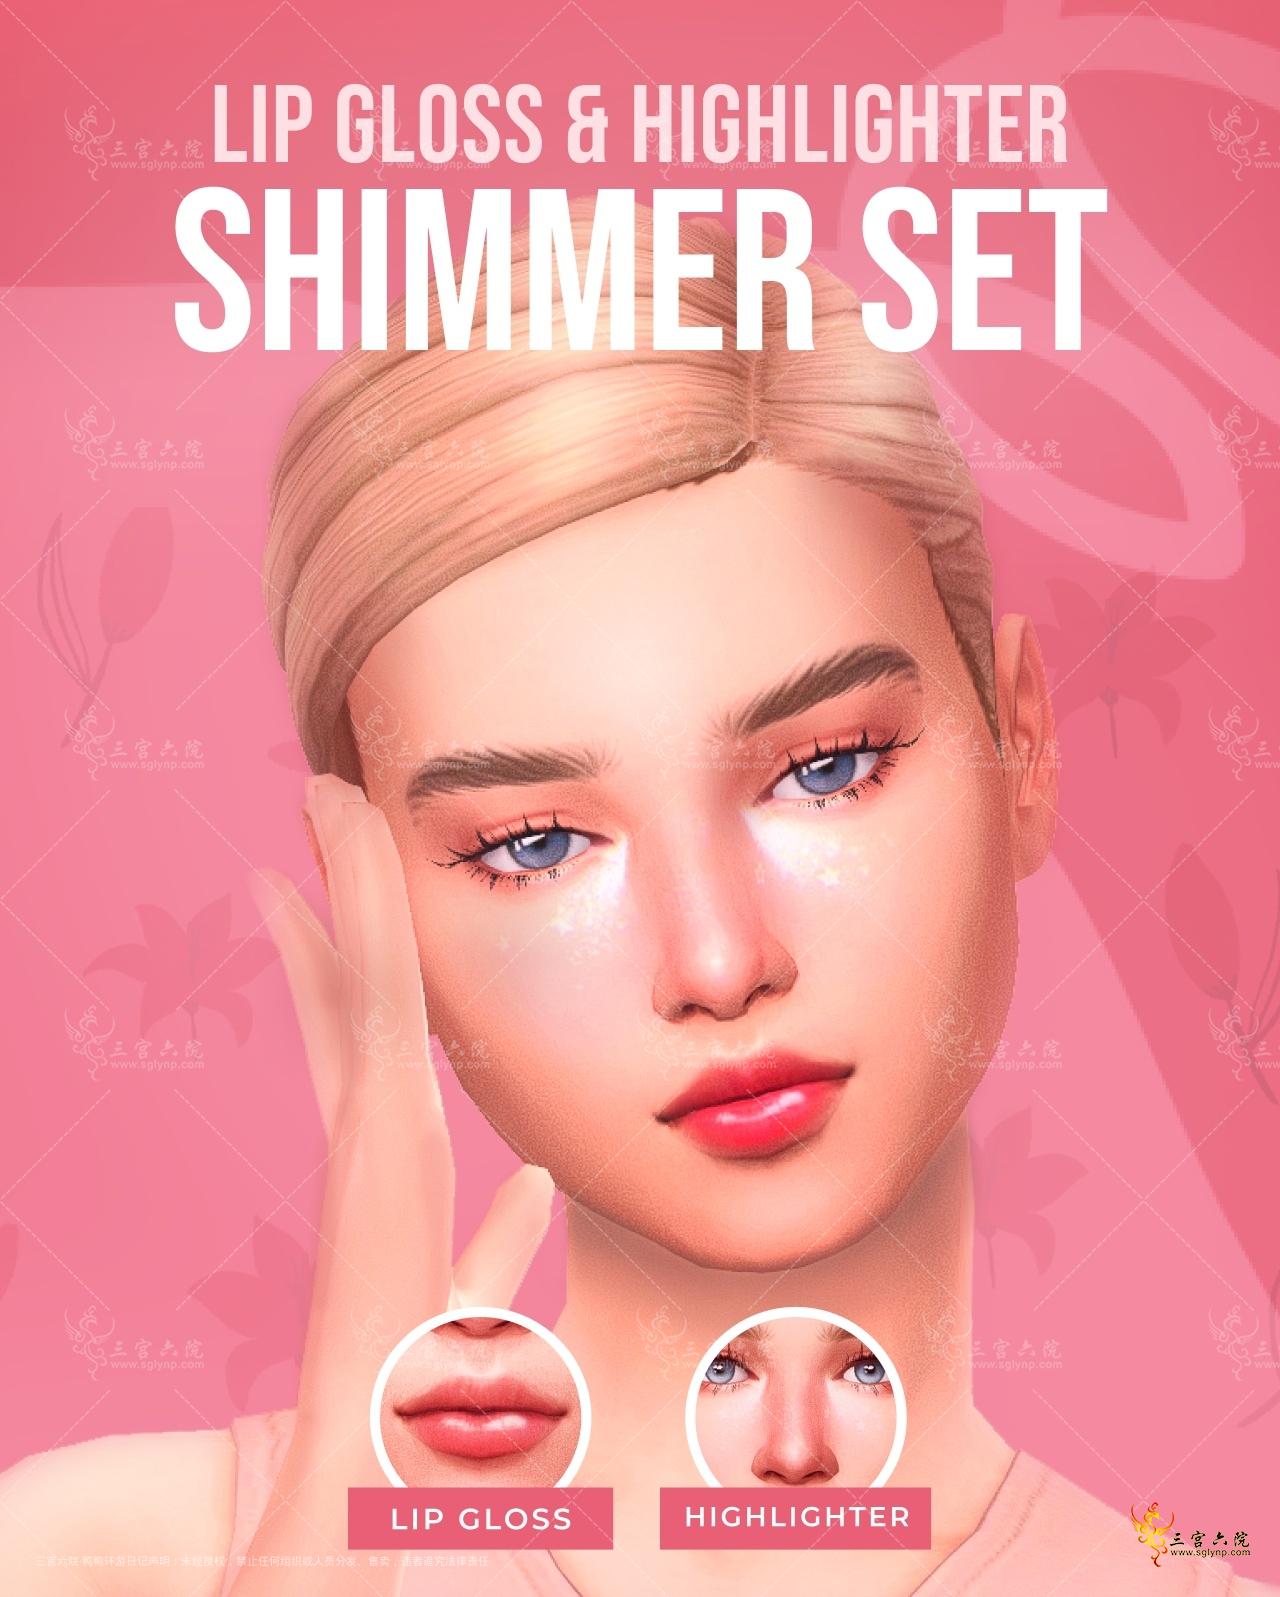 Shimmer set-1.png